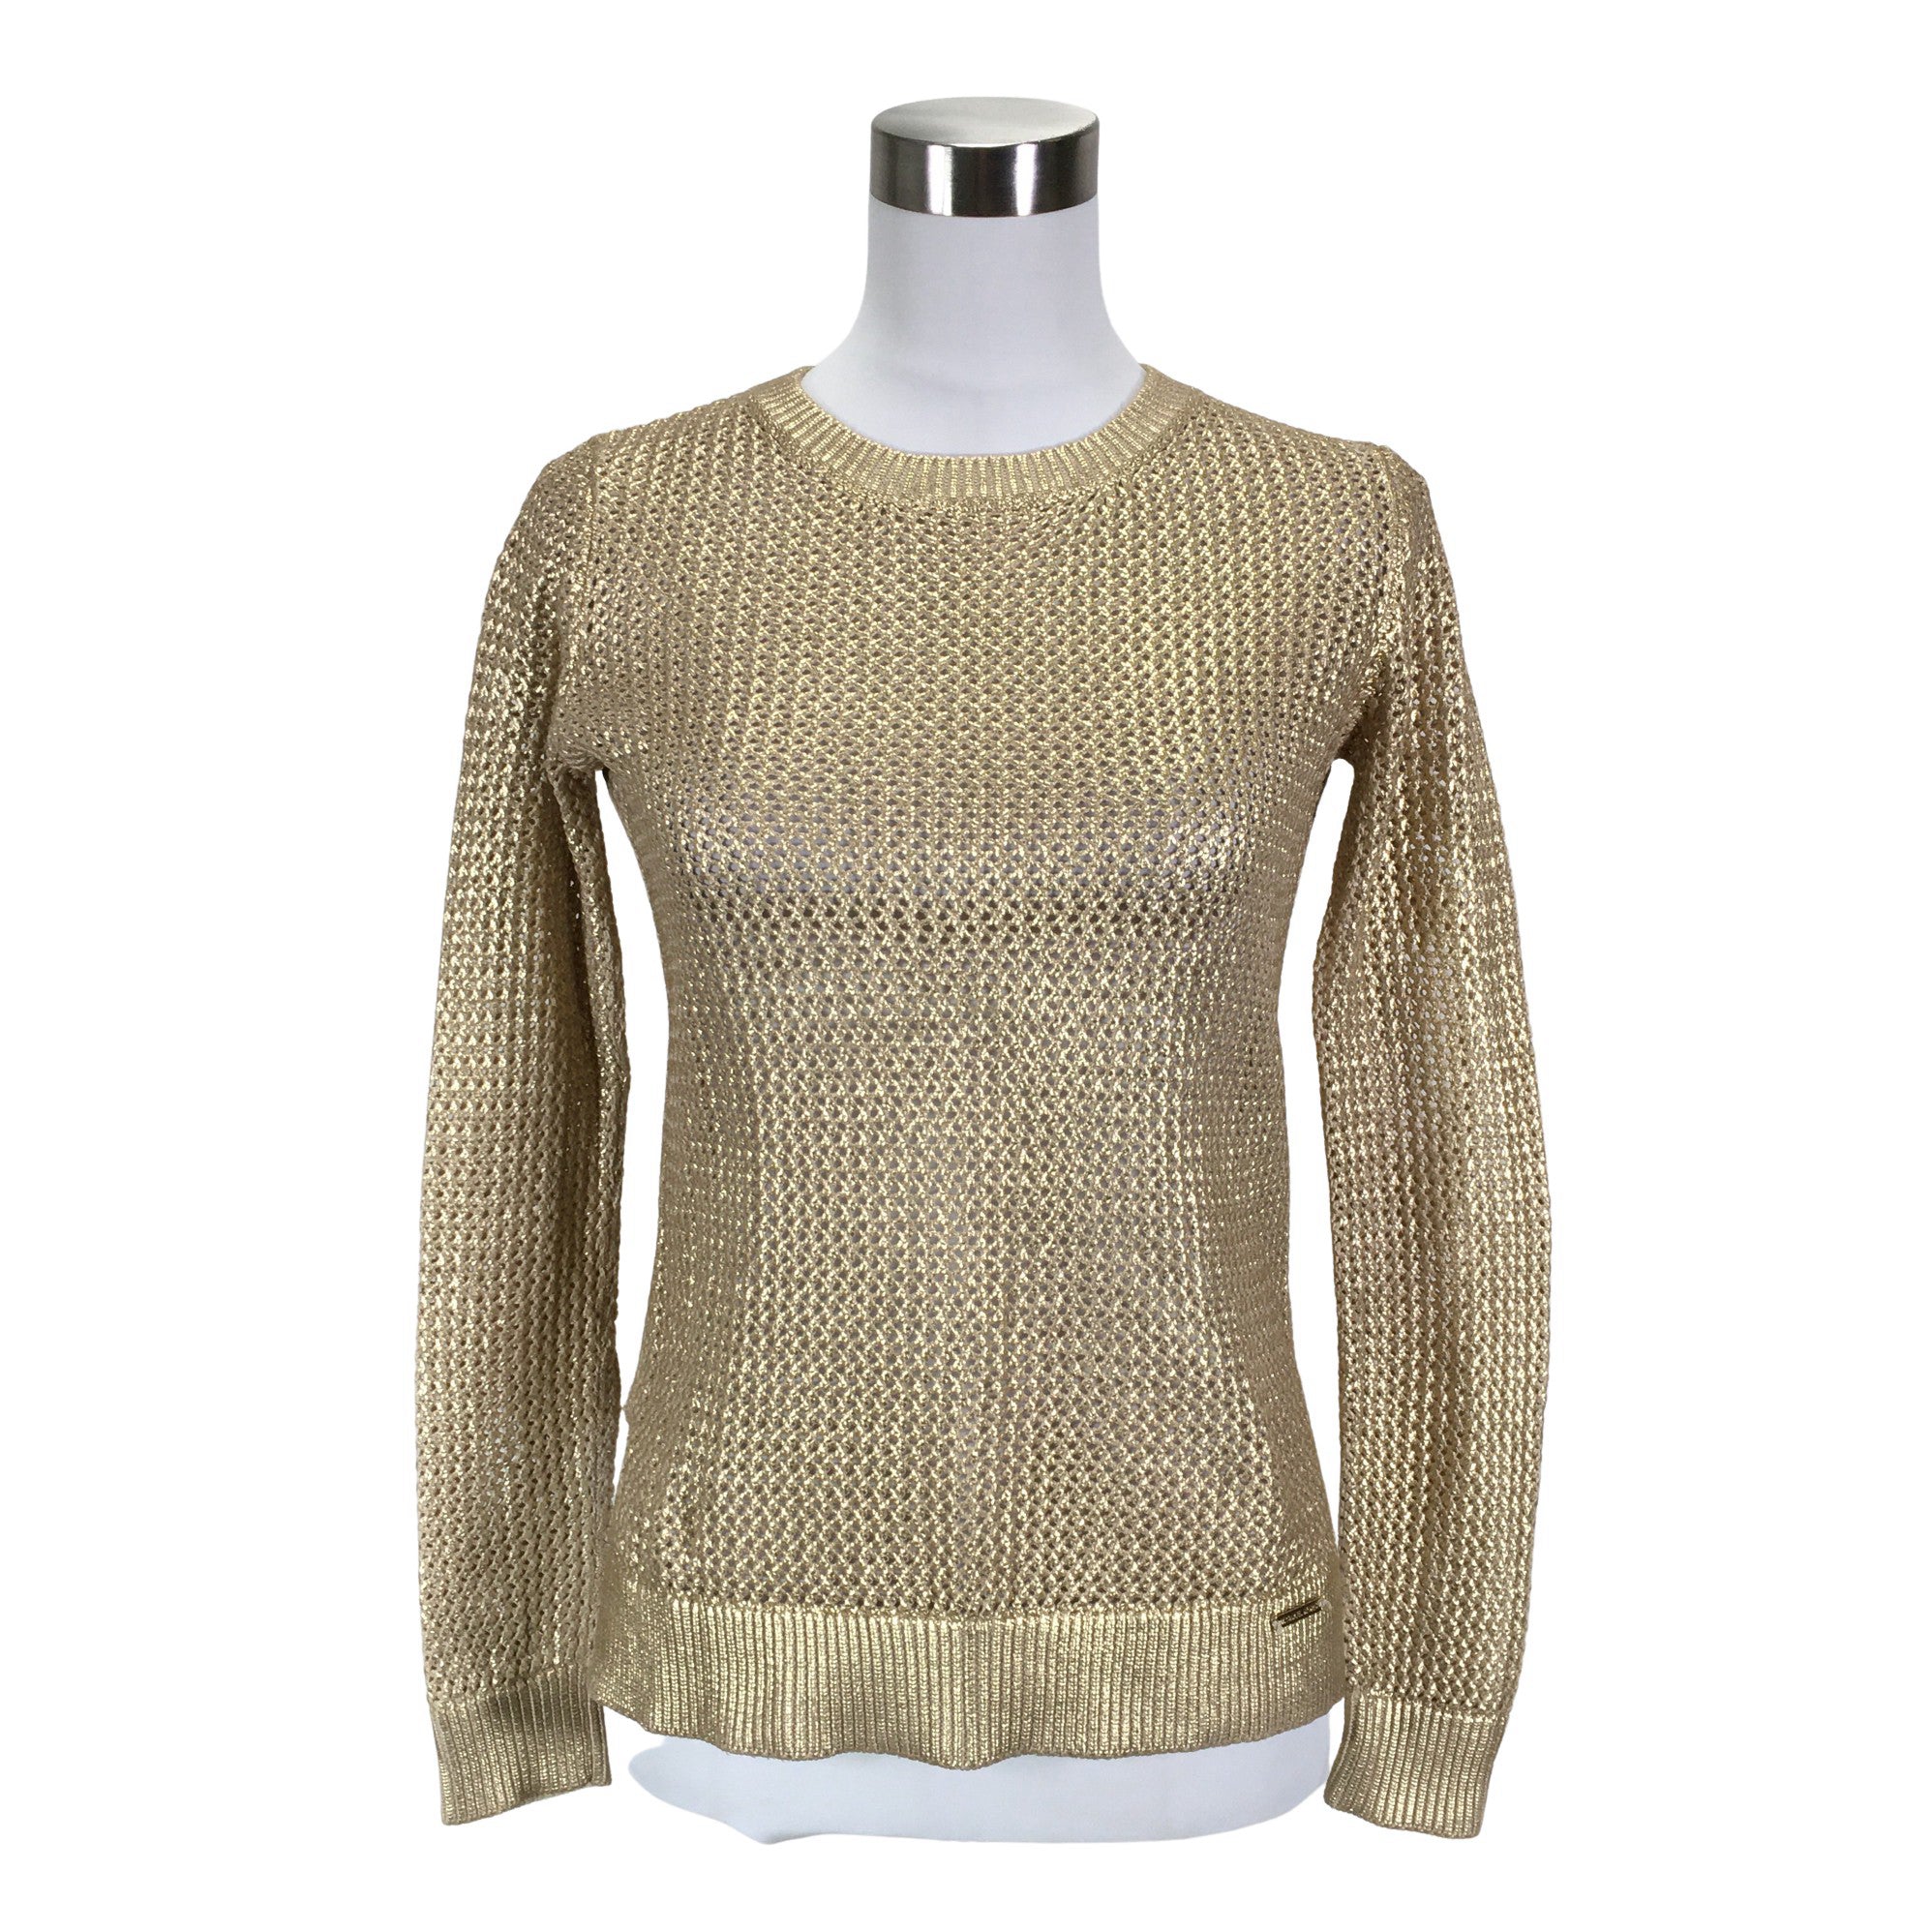 Women's Michael Kors Sweater, size 36 (Beige) | Emmy